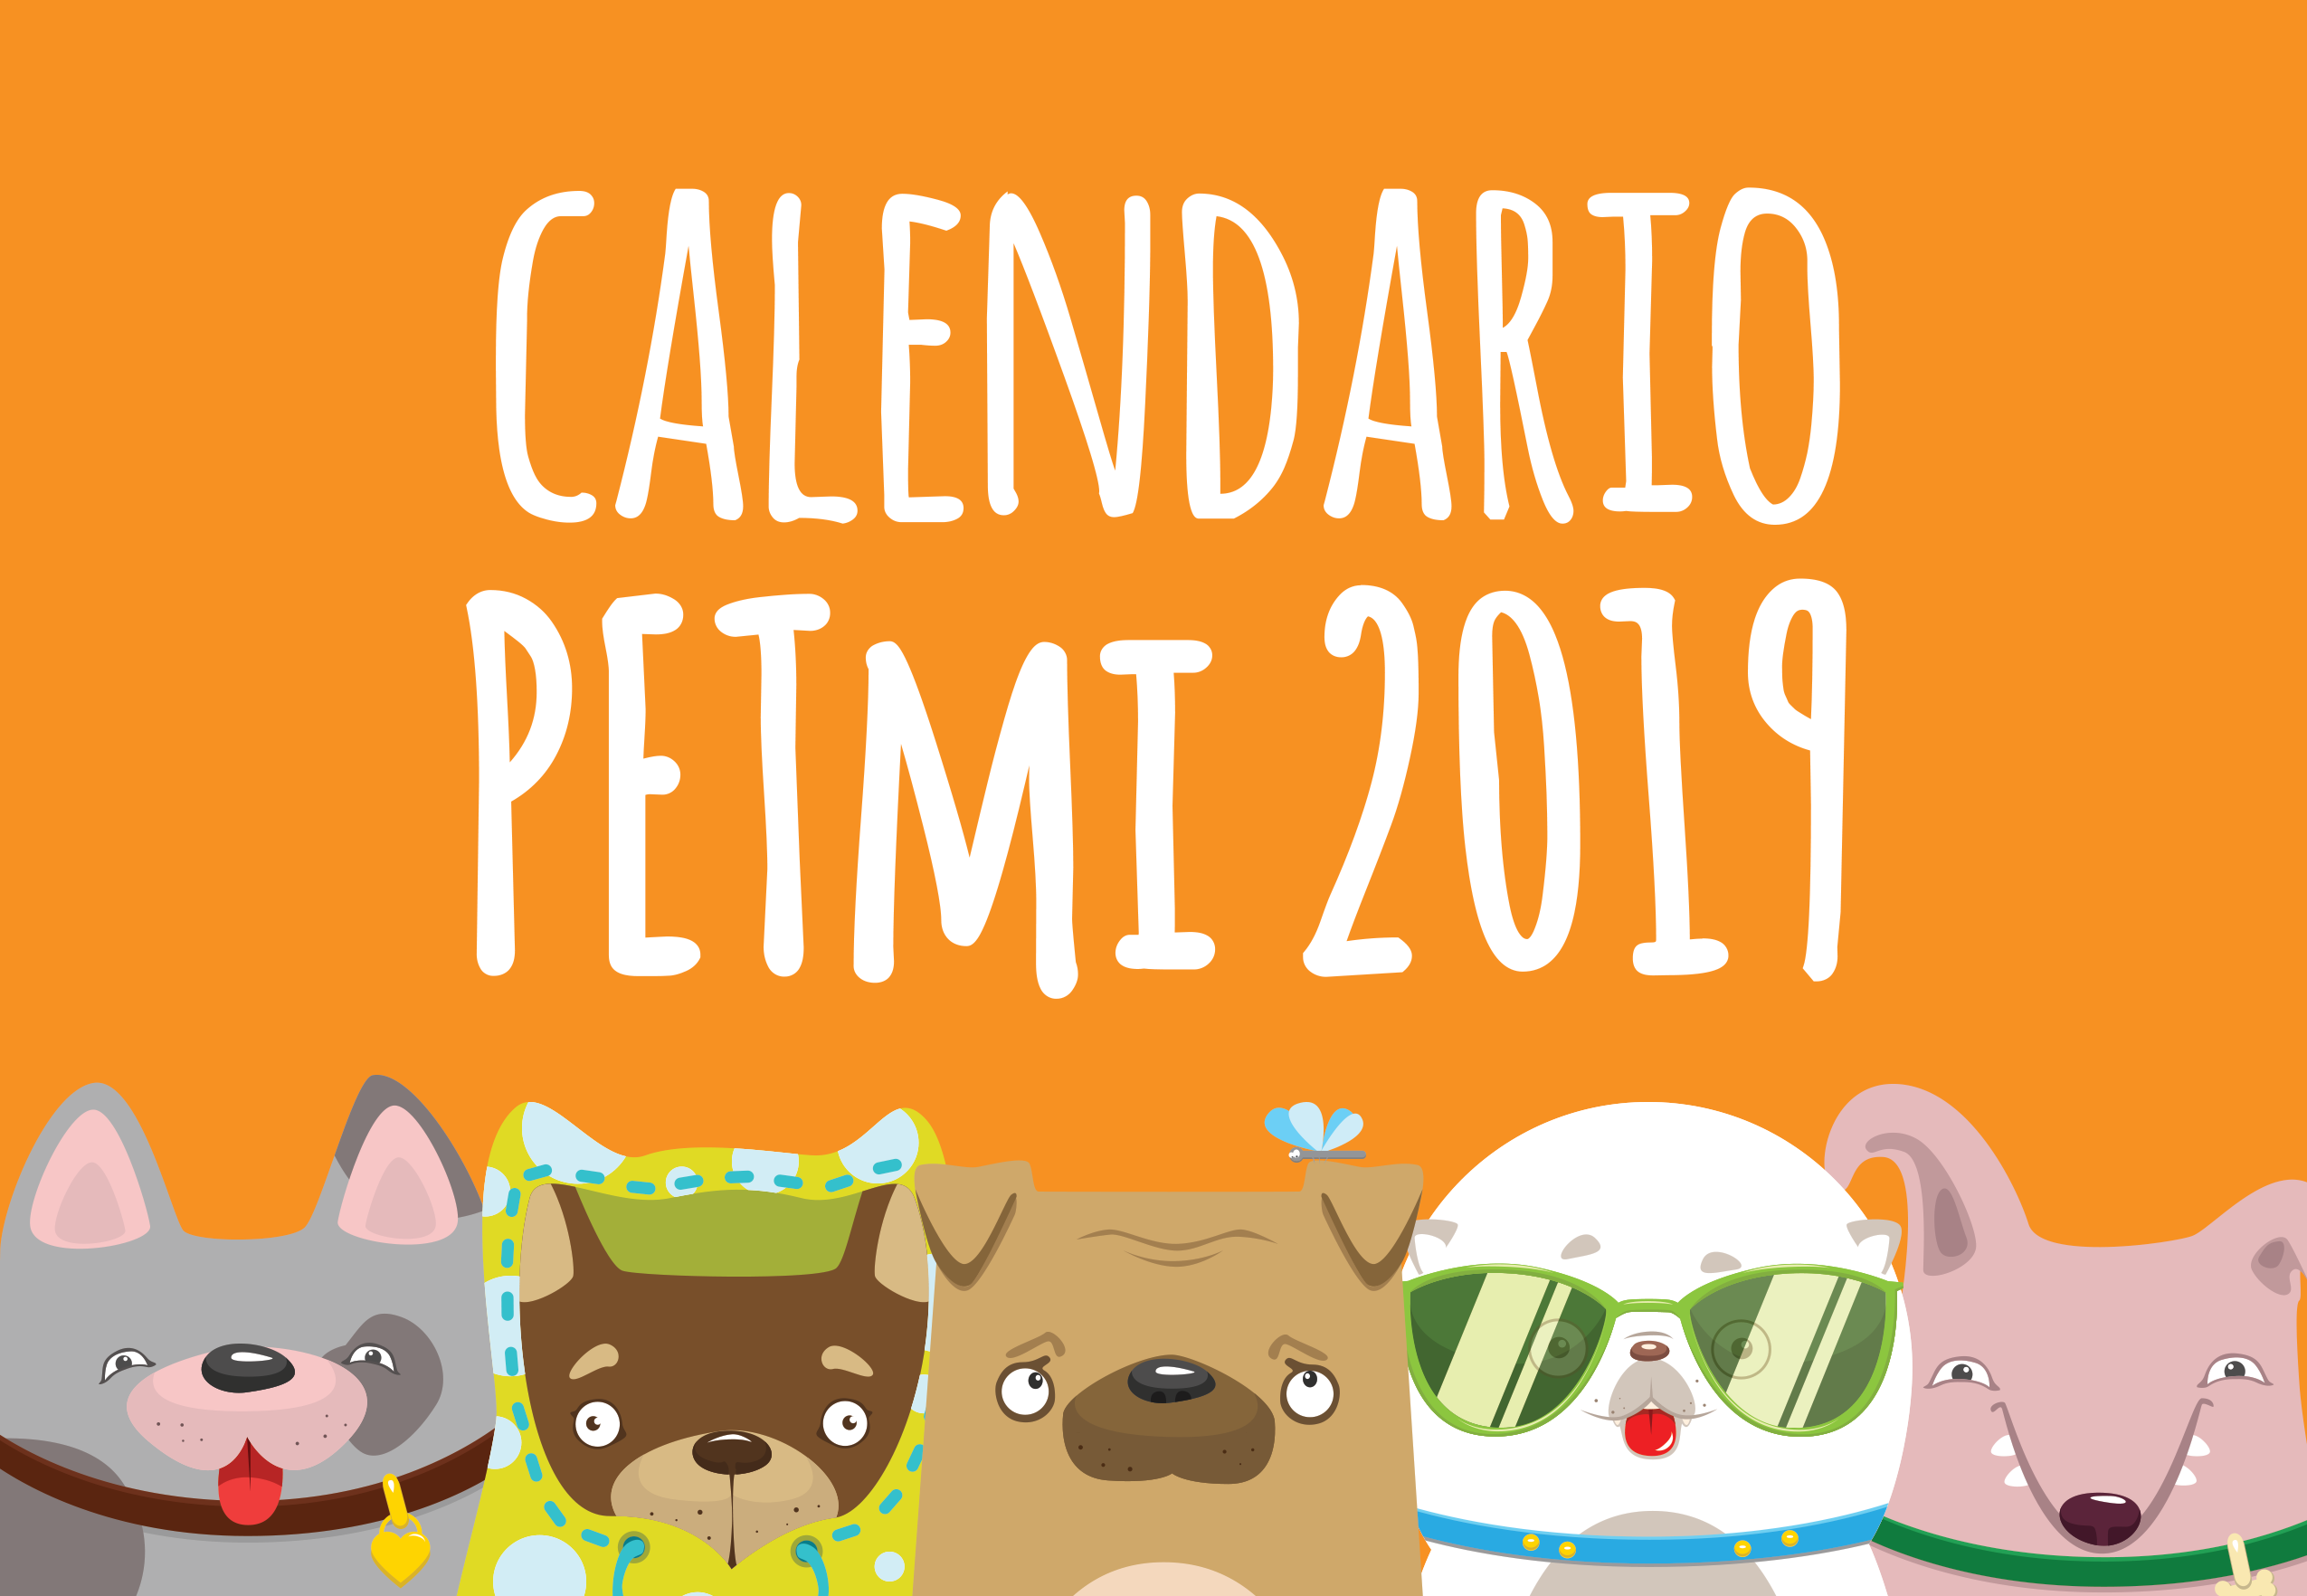 Calendario-petmi-2019